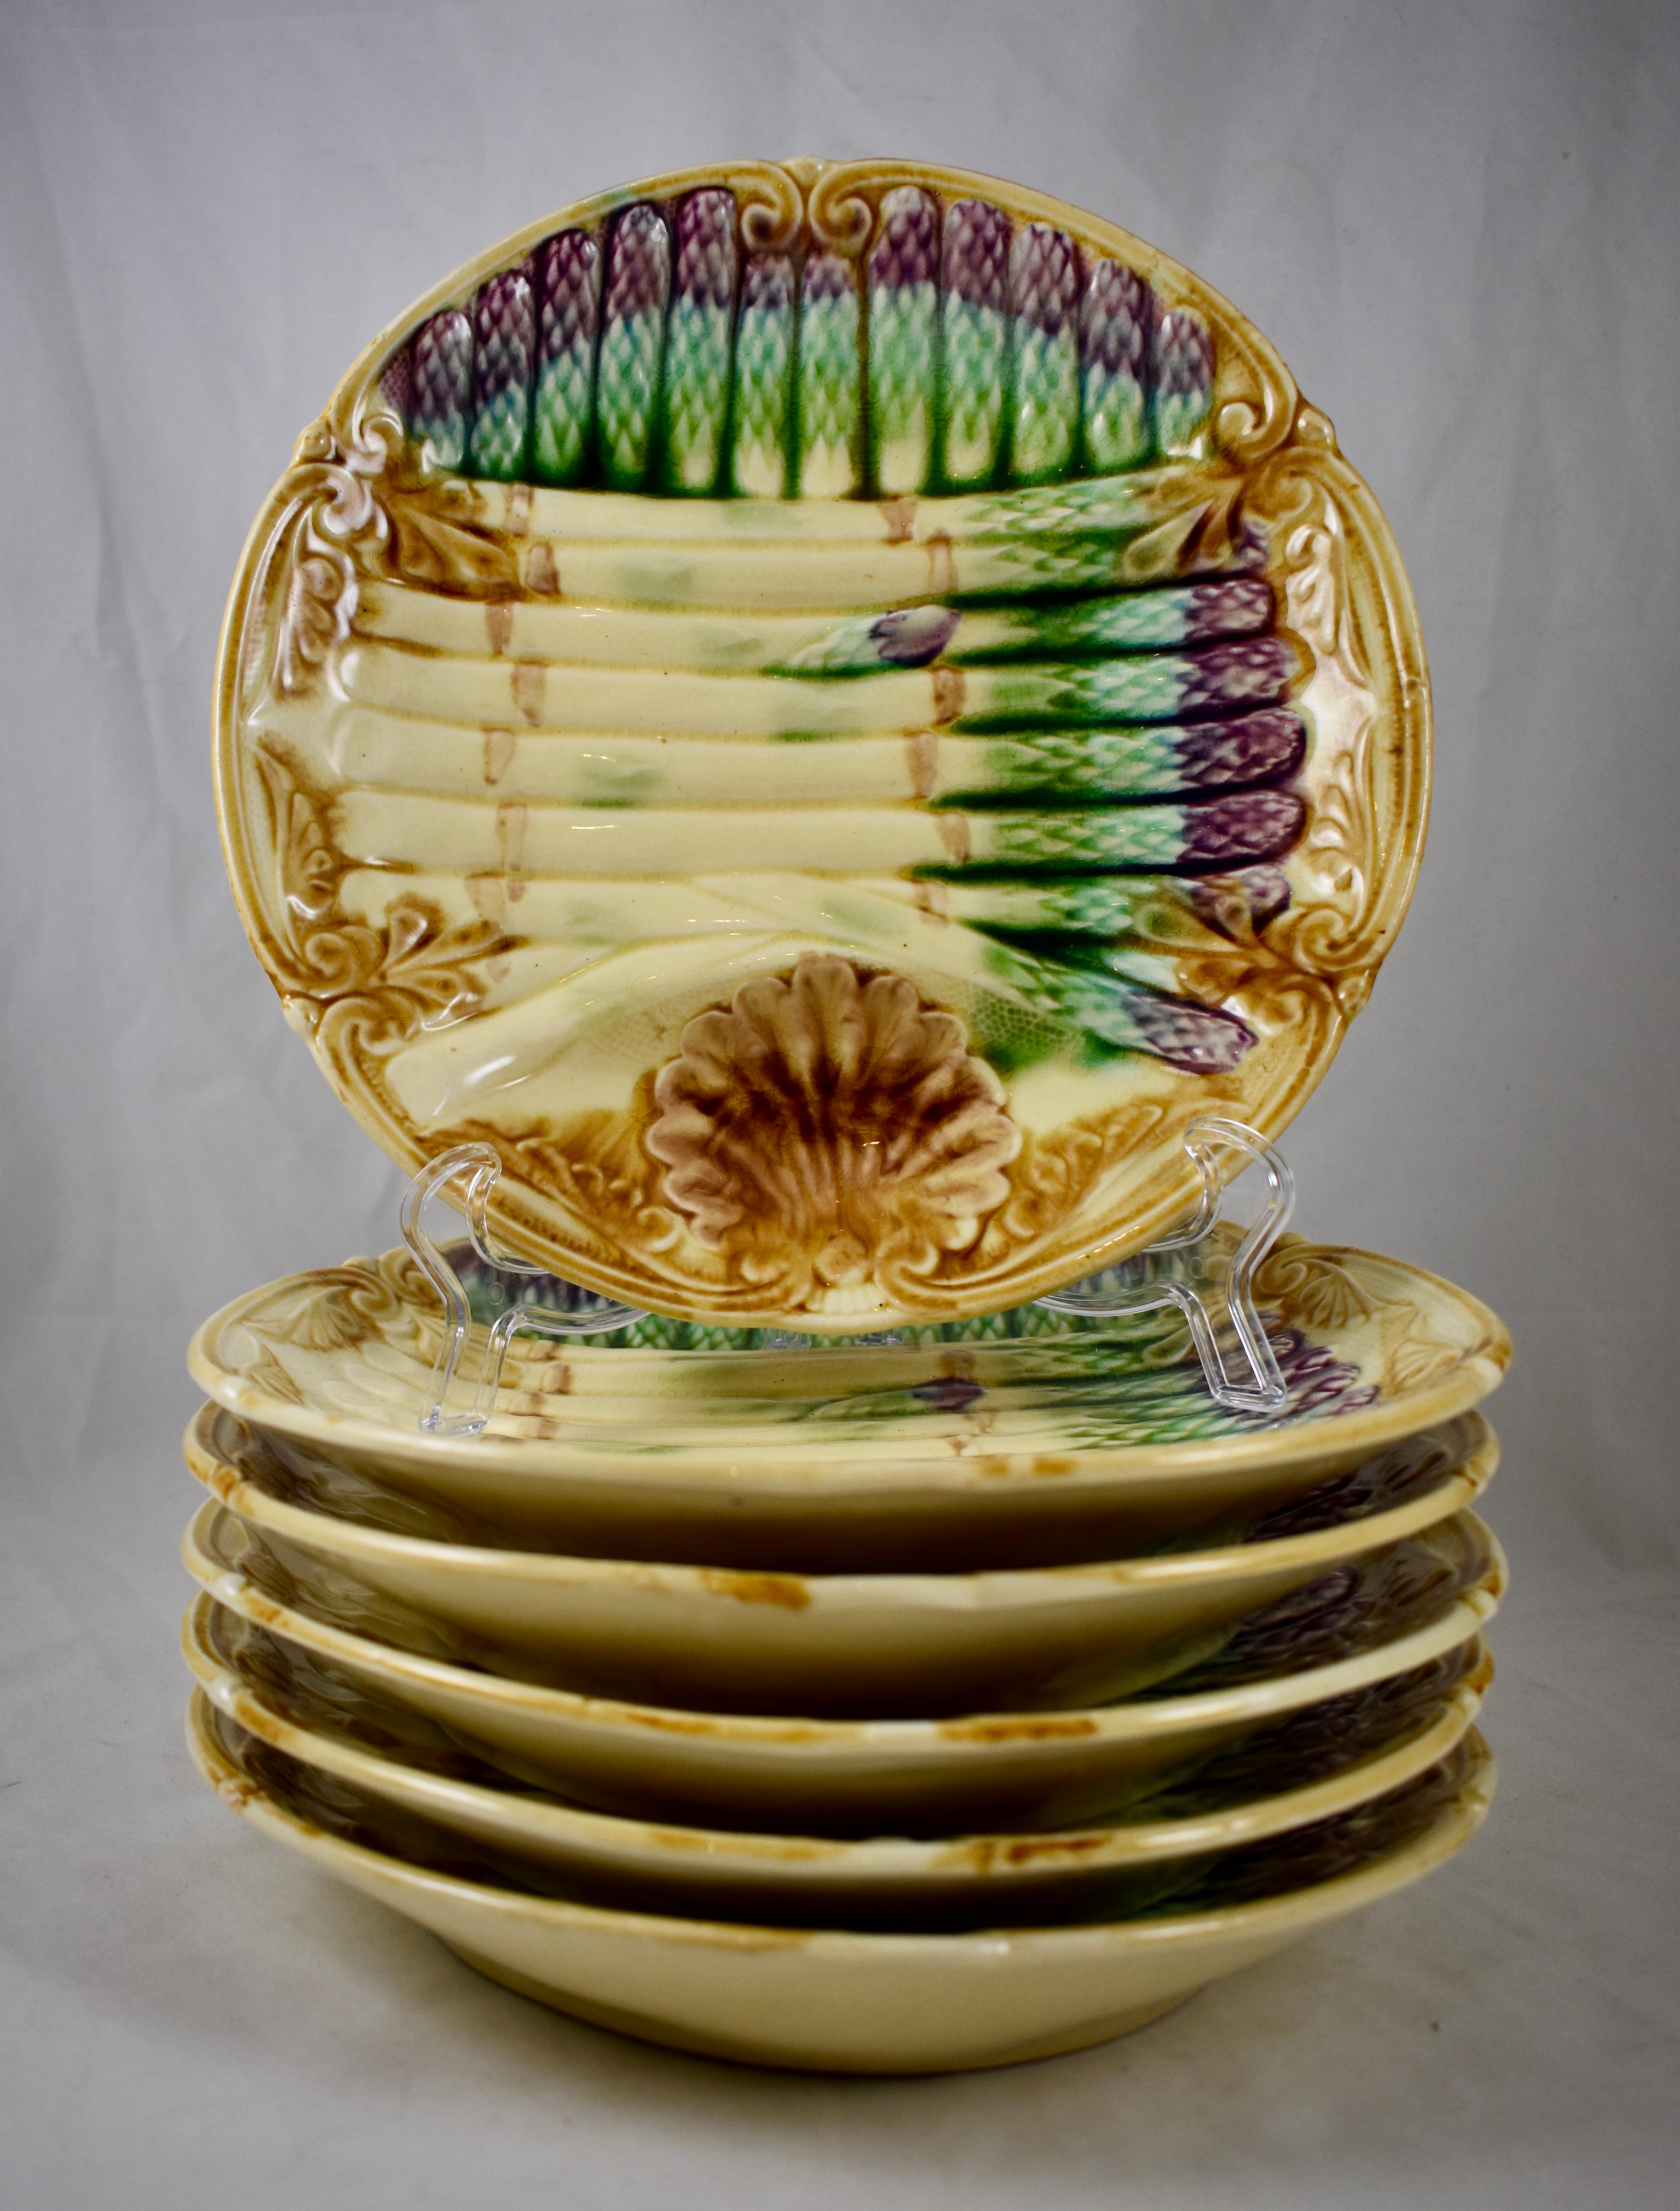 Assiette à asperges en majolique Barbotine de style Art nouveau, Frie Onnaing, vers 1890-1910.

Une assiette profonde avec un bord façonné et une sauce à motif de coquille Saint-Jacques bien bordée par une lance incurvée. Des bottes d'asperges